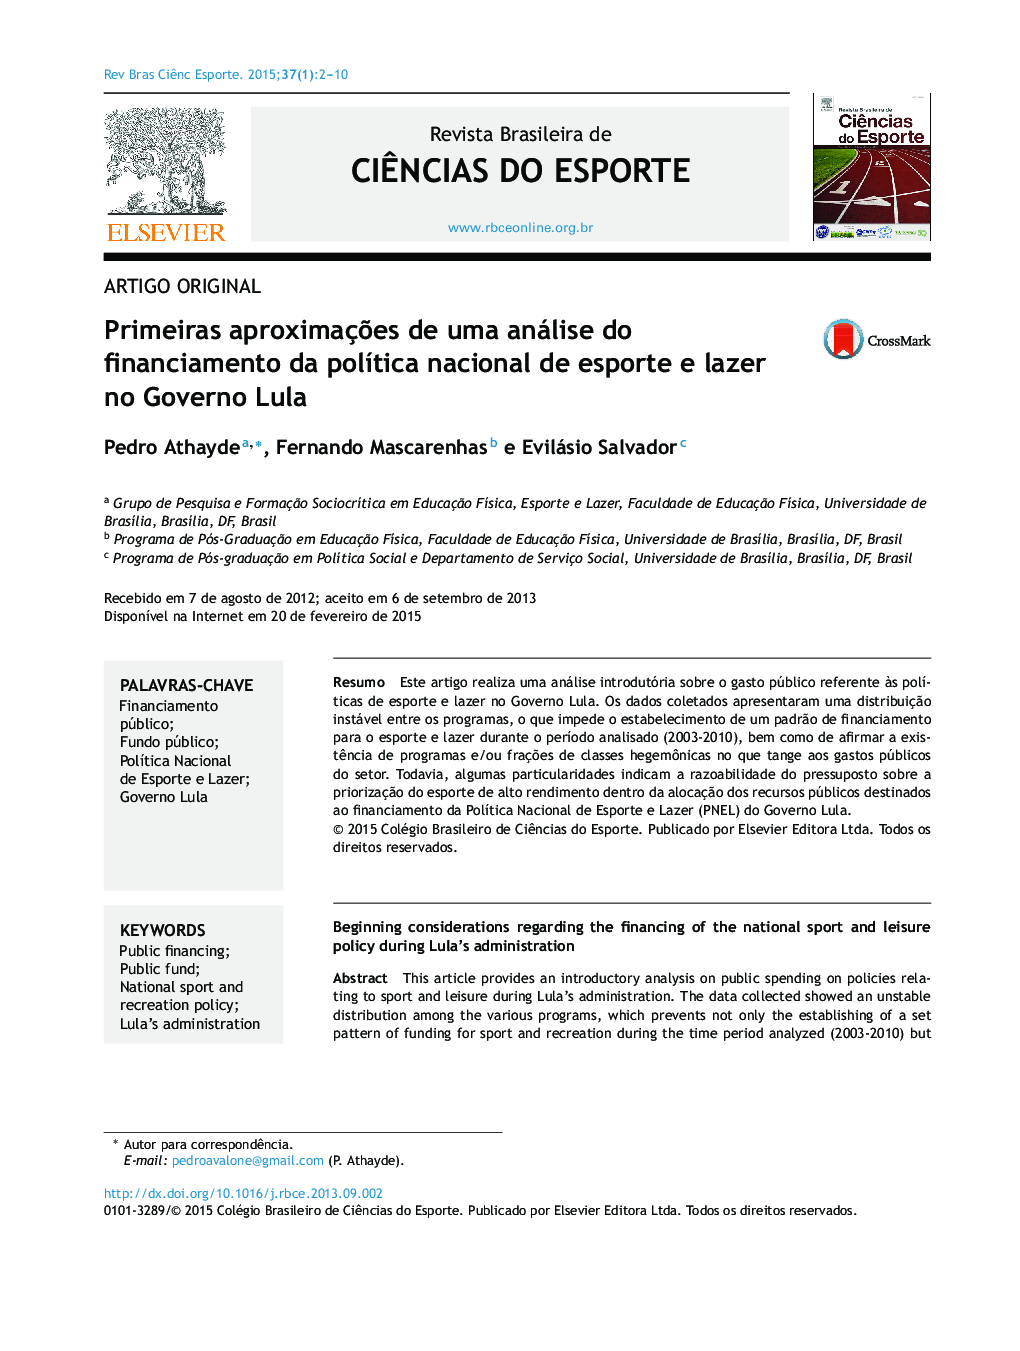 رویکردهای اولیه برای تجزیه و تحلیل تأمین مالی سیاست ملی و ورزشی در دولت لولا 